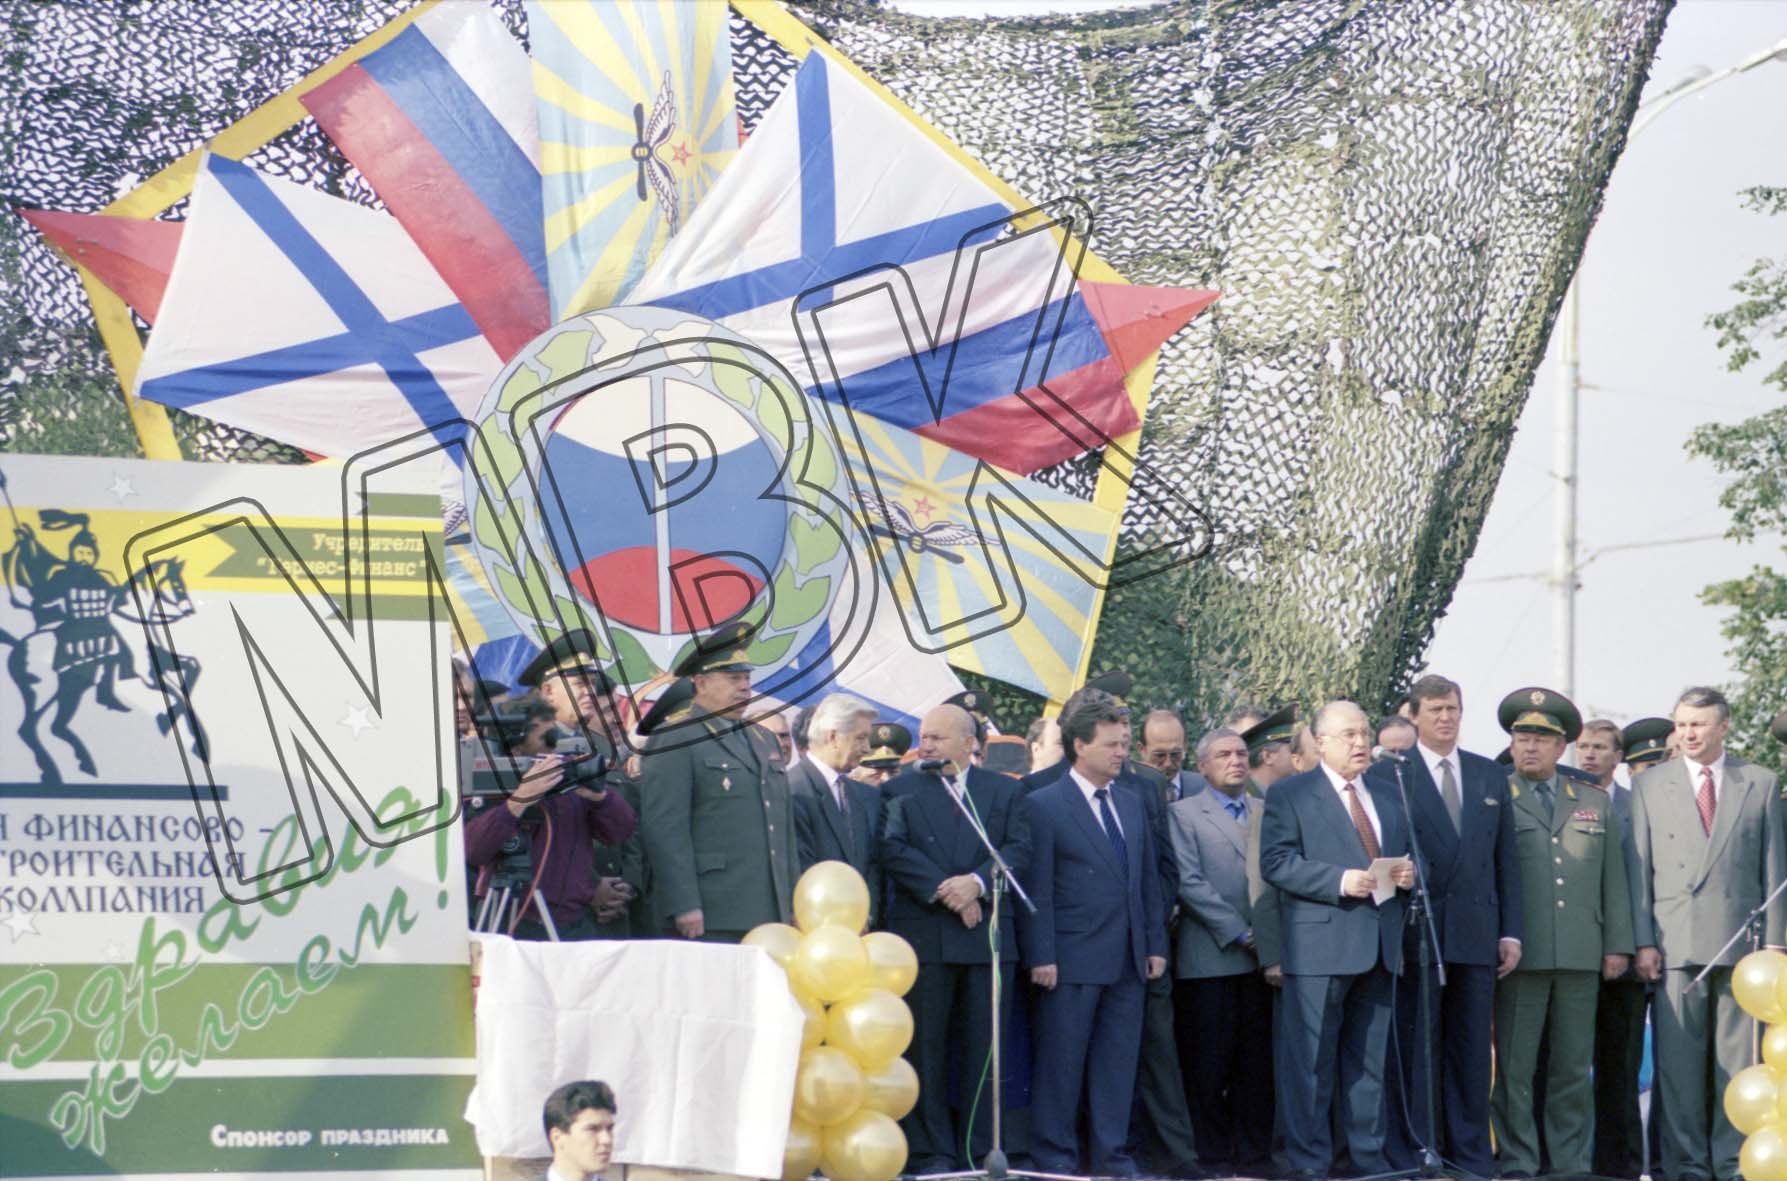 Fotografie: Begrüßung der Berlin-Brigade durch den russischen Ministerpräsidenten, Moskau, 3. September 1994 (Museum Berlin-Karlshorst RR-P)